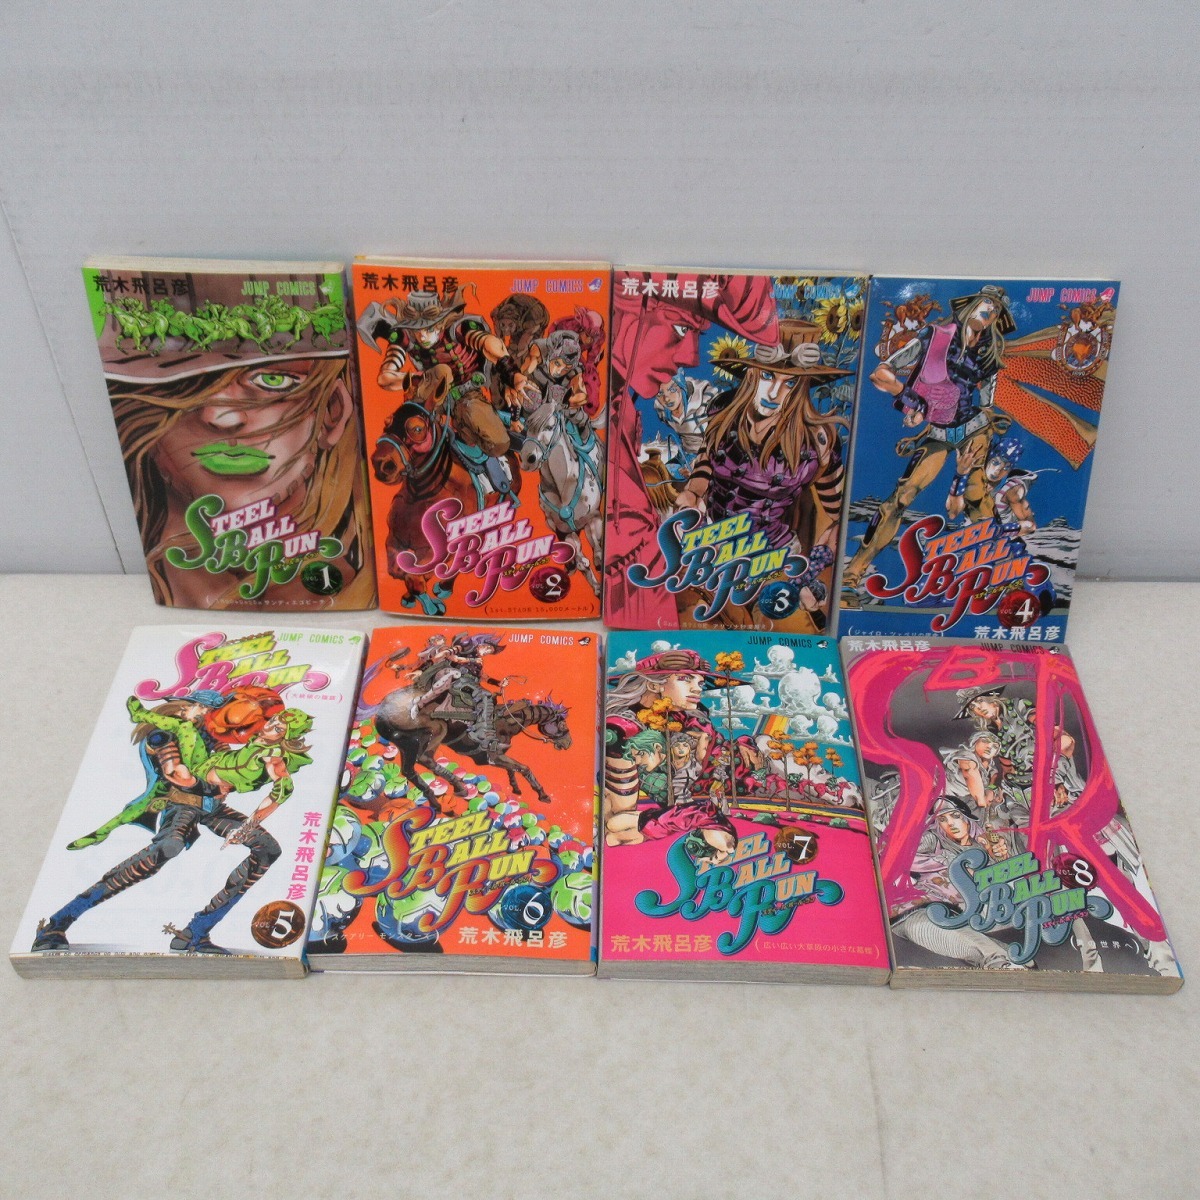 ジャンプコミックス STEEL BALL RUN 全24巻/ジョジョリオン1 9巻/岸辺 